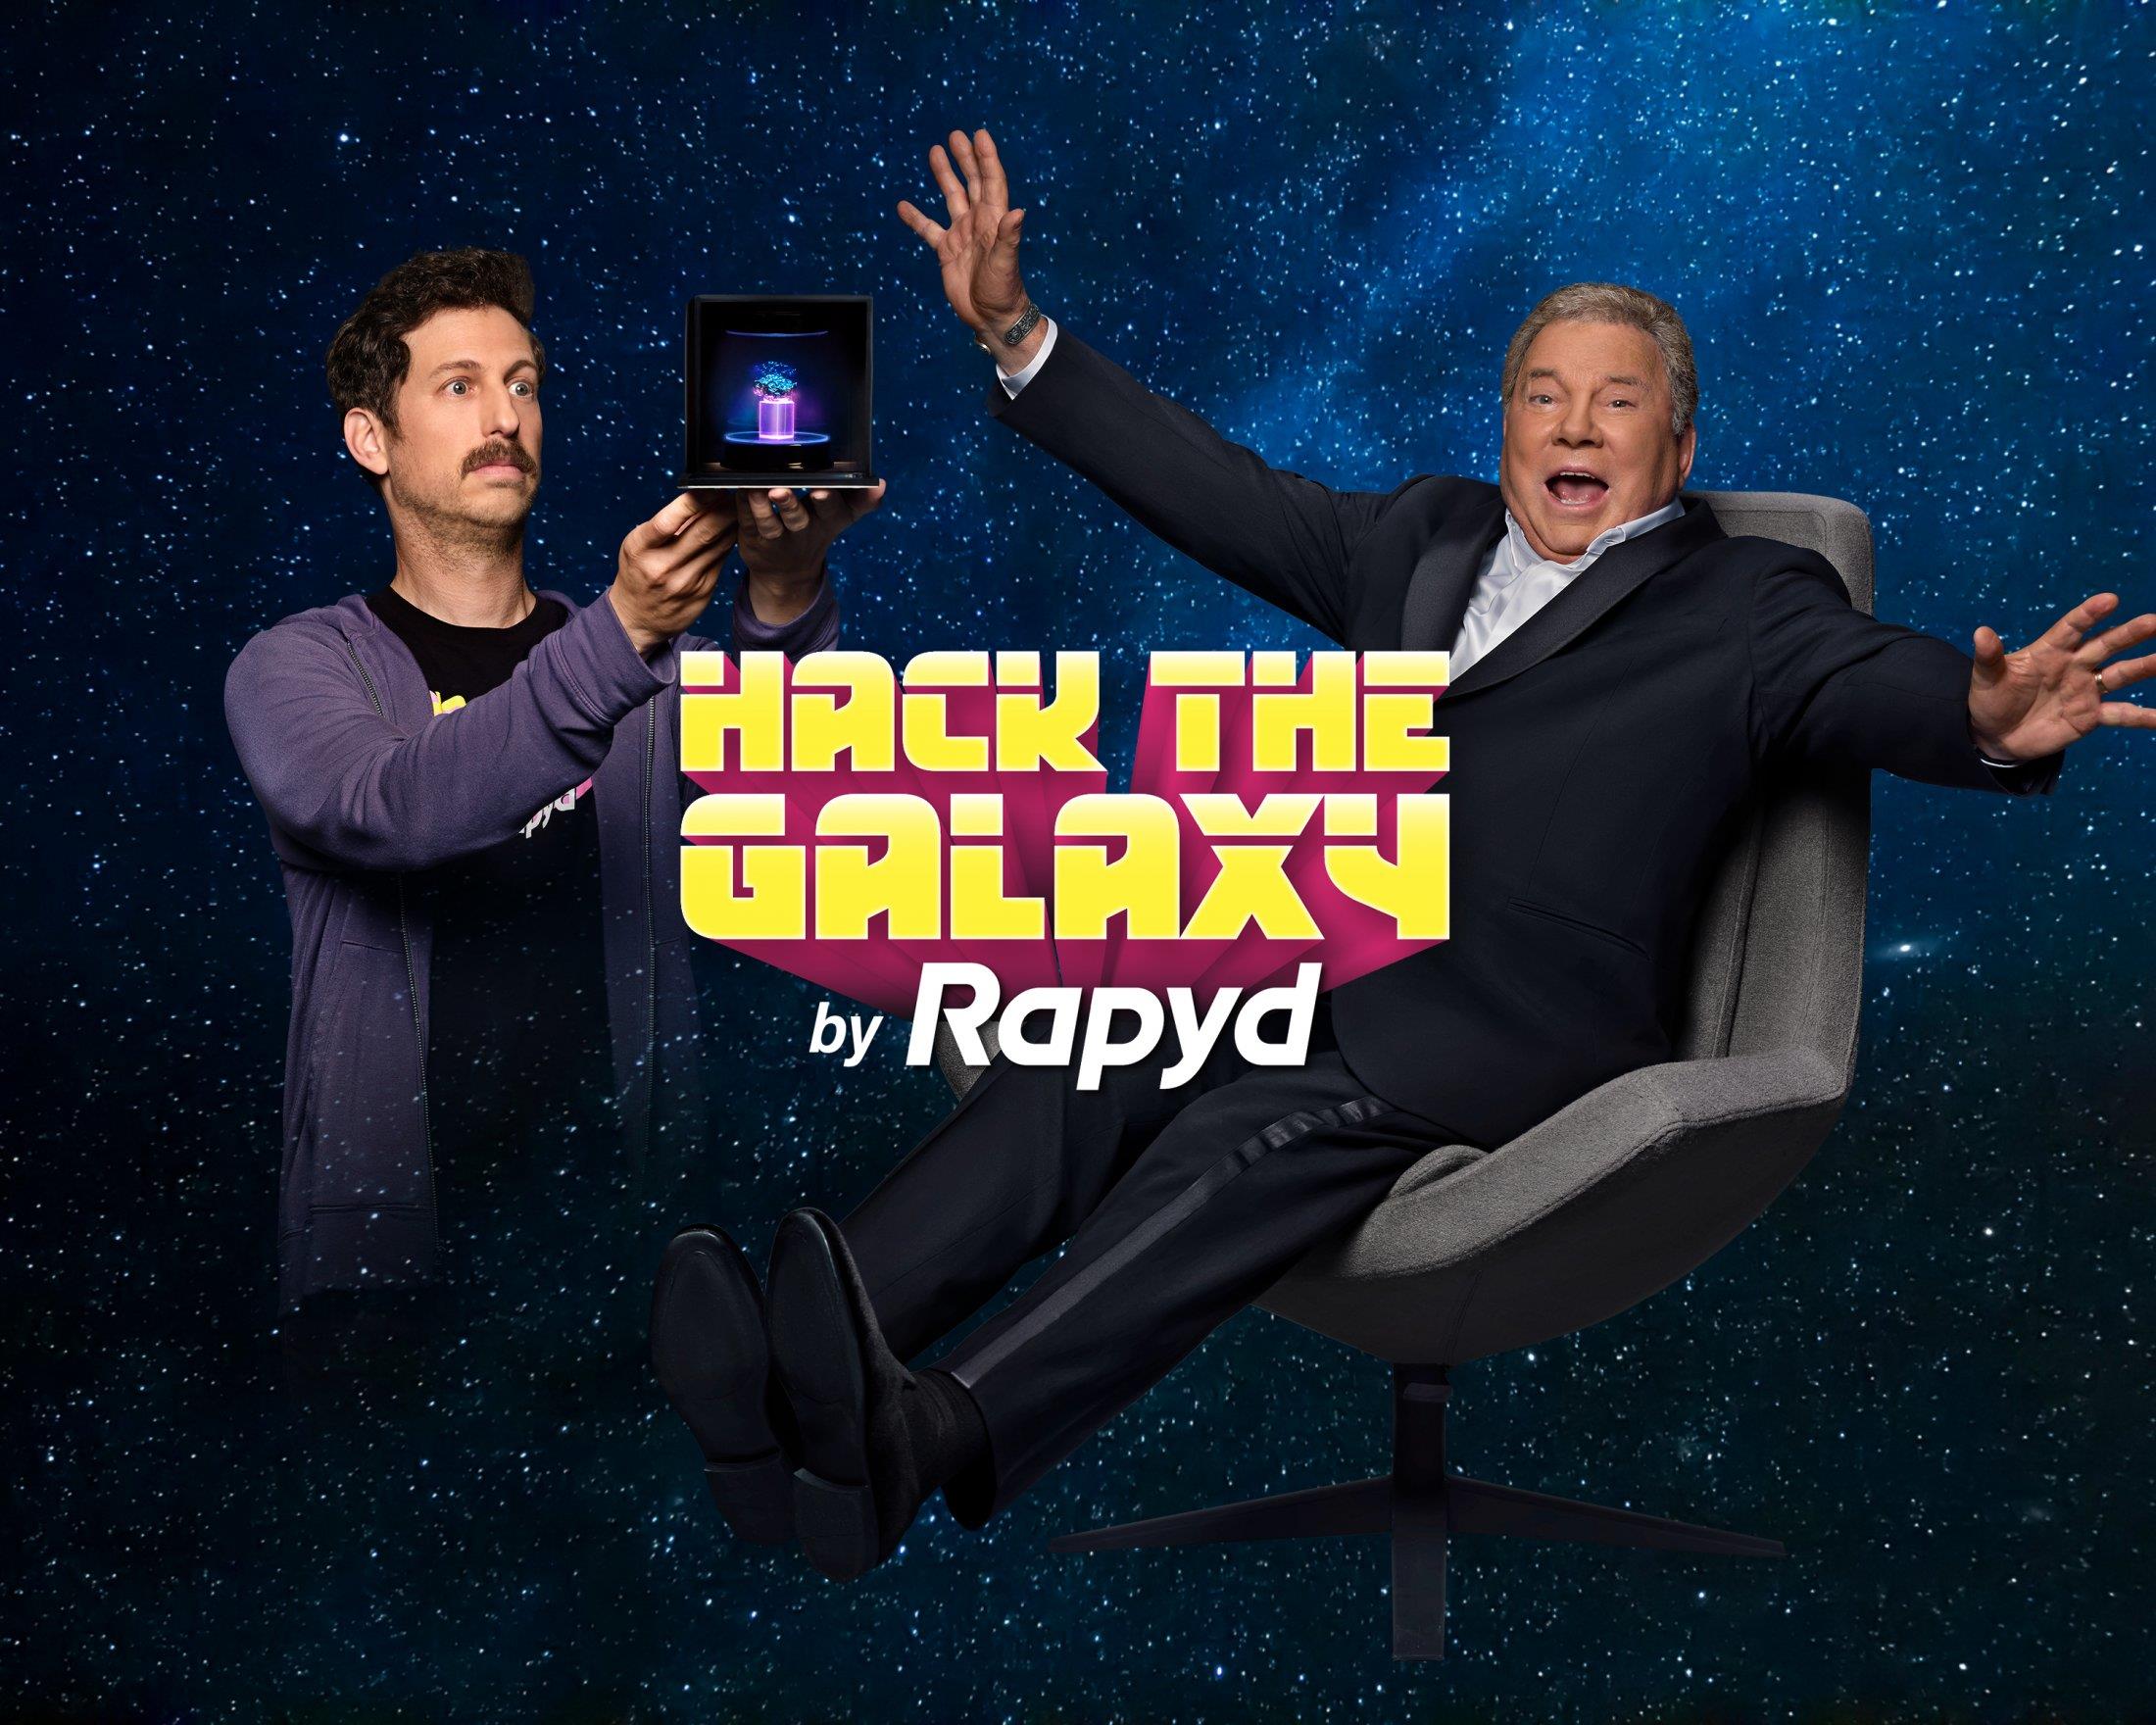 Rapyd: Hack the Galaxy